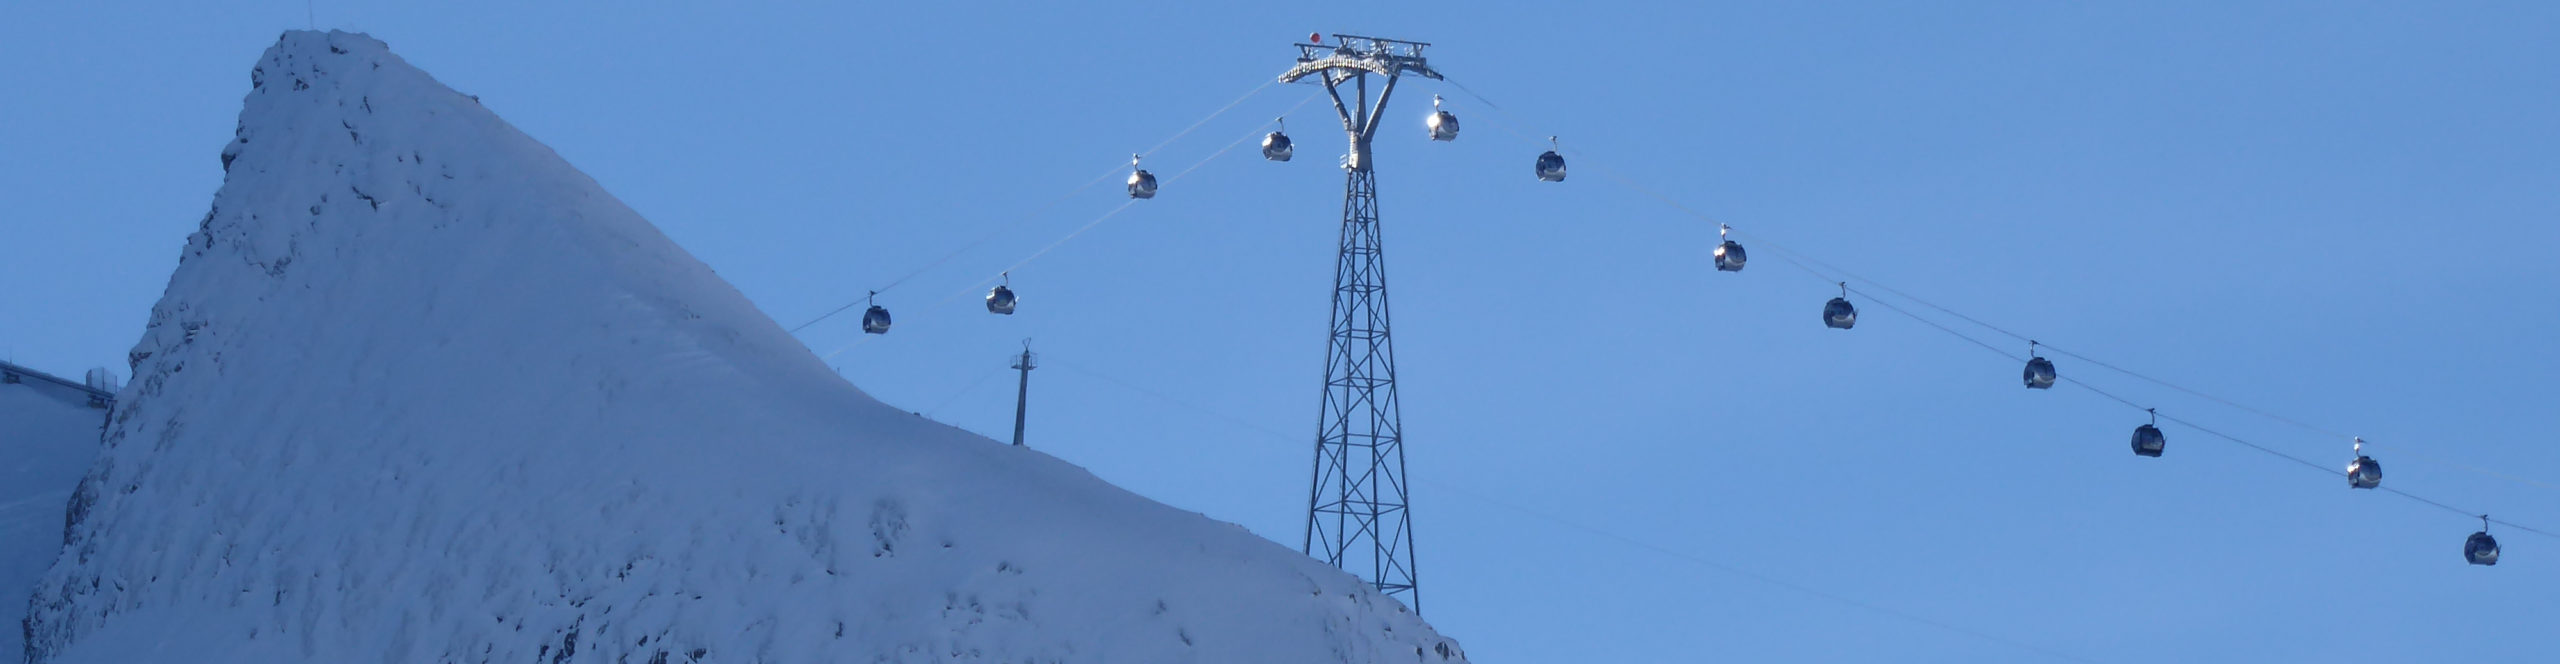 ZELL AM SEE – Kitzsteinhorn – Saalbach – verlängertes Skiwochenende in drei Skigebiete – 3 Skitage ab Donnerstag 